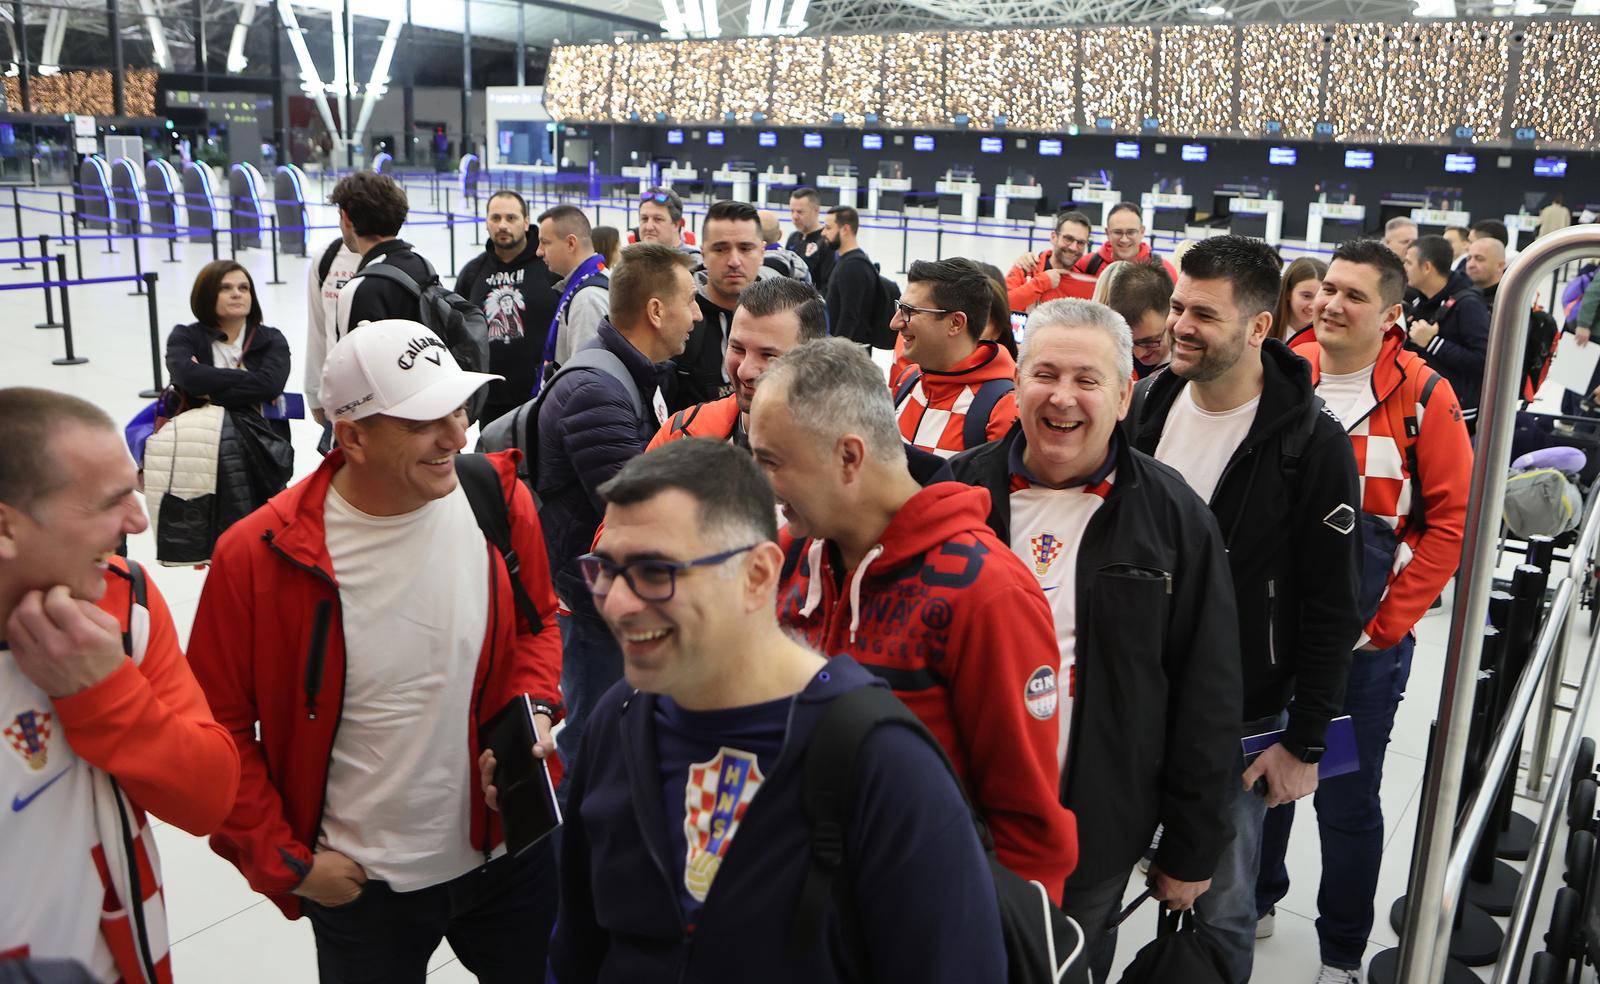 Zagrebu: U Zračnoj luci Franjo Tuđman okupili su se navijači prije odlaska u Katar na utakmicu između Hrvatske i Maroka